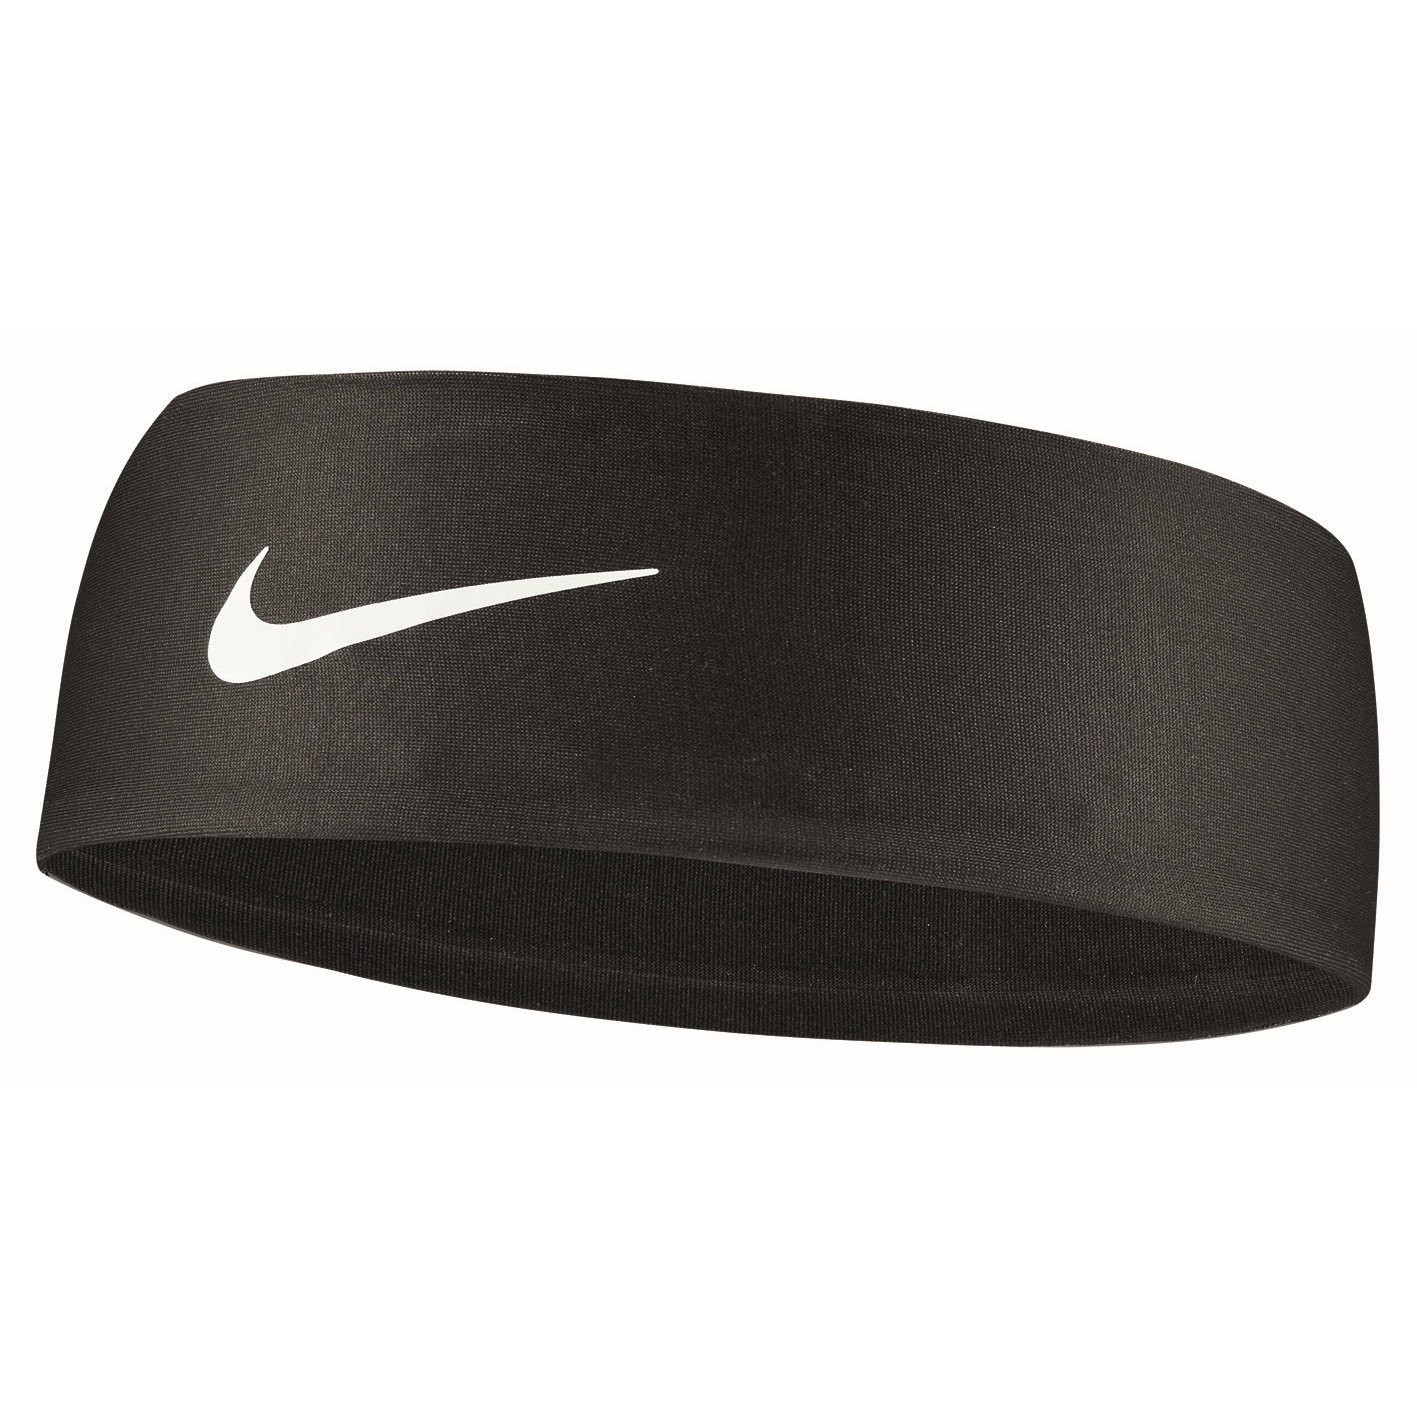 Produktbild von Nike Fury Stirnband 3.0 - black/white 010